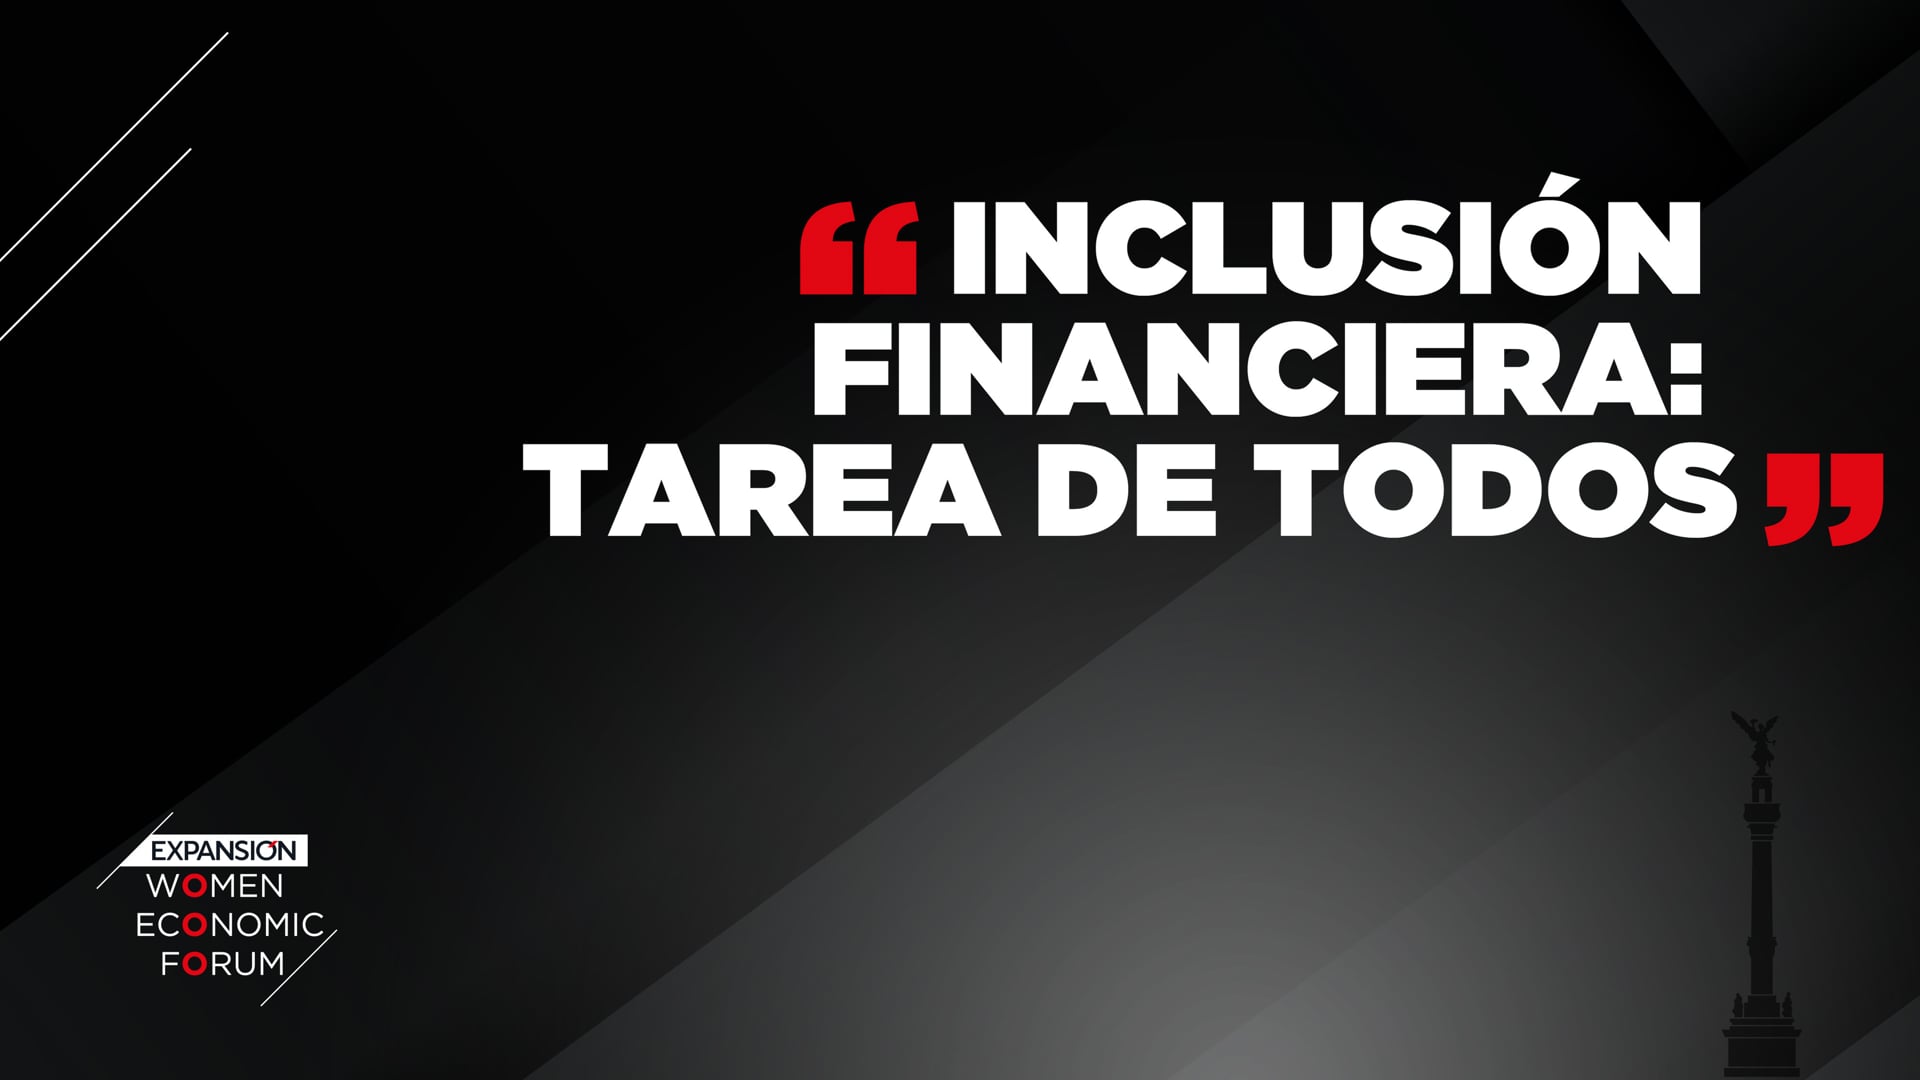 “Inclusión financiera: Tarea de todos” – #EXPANSIÓNWEF22